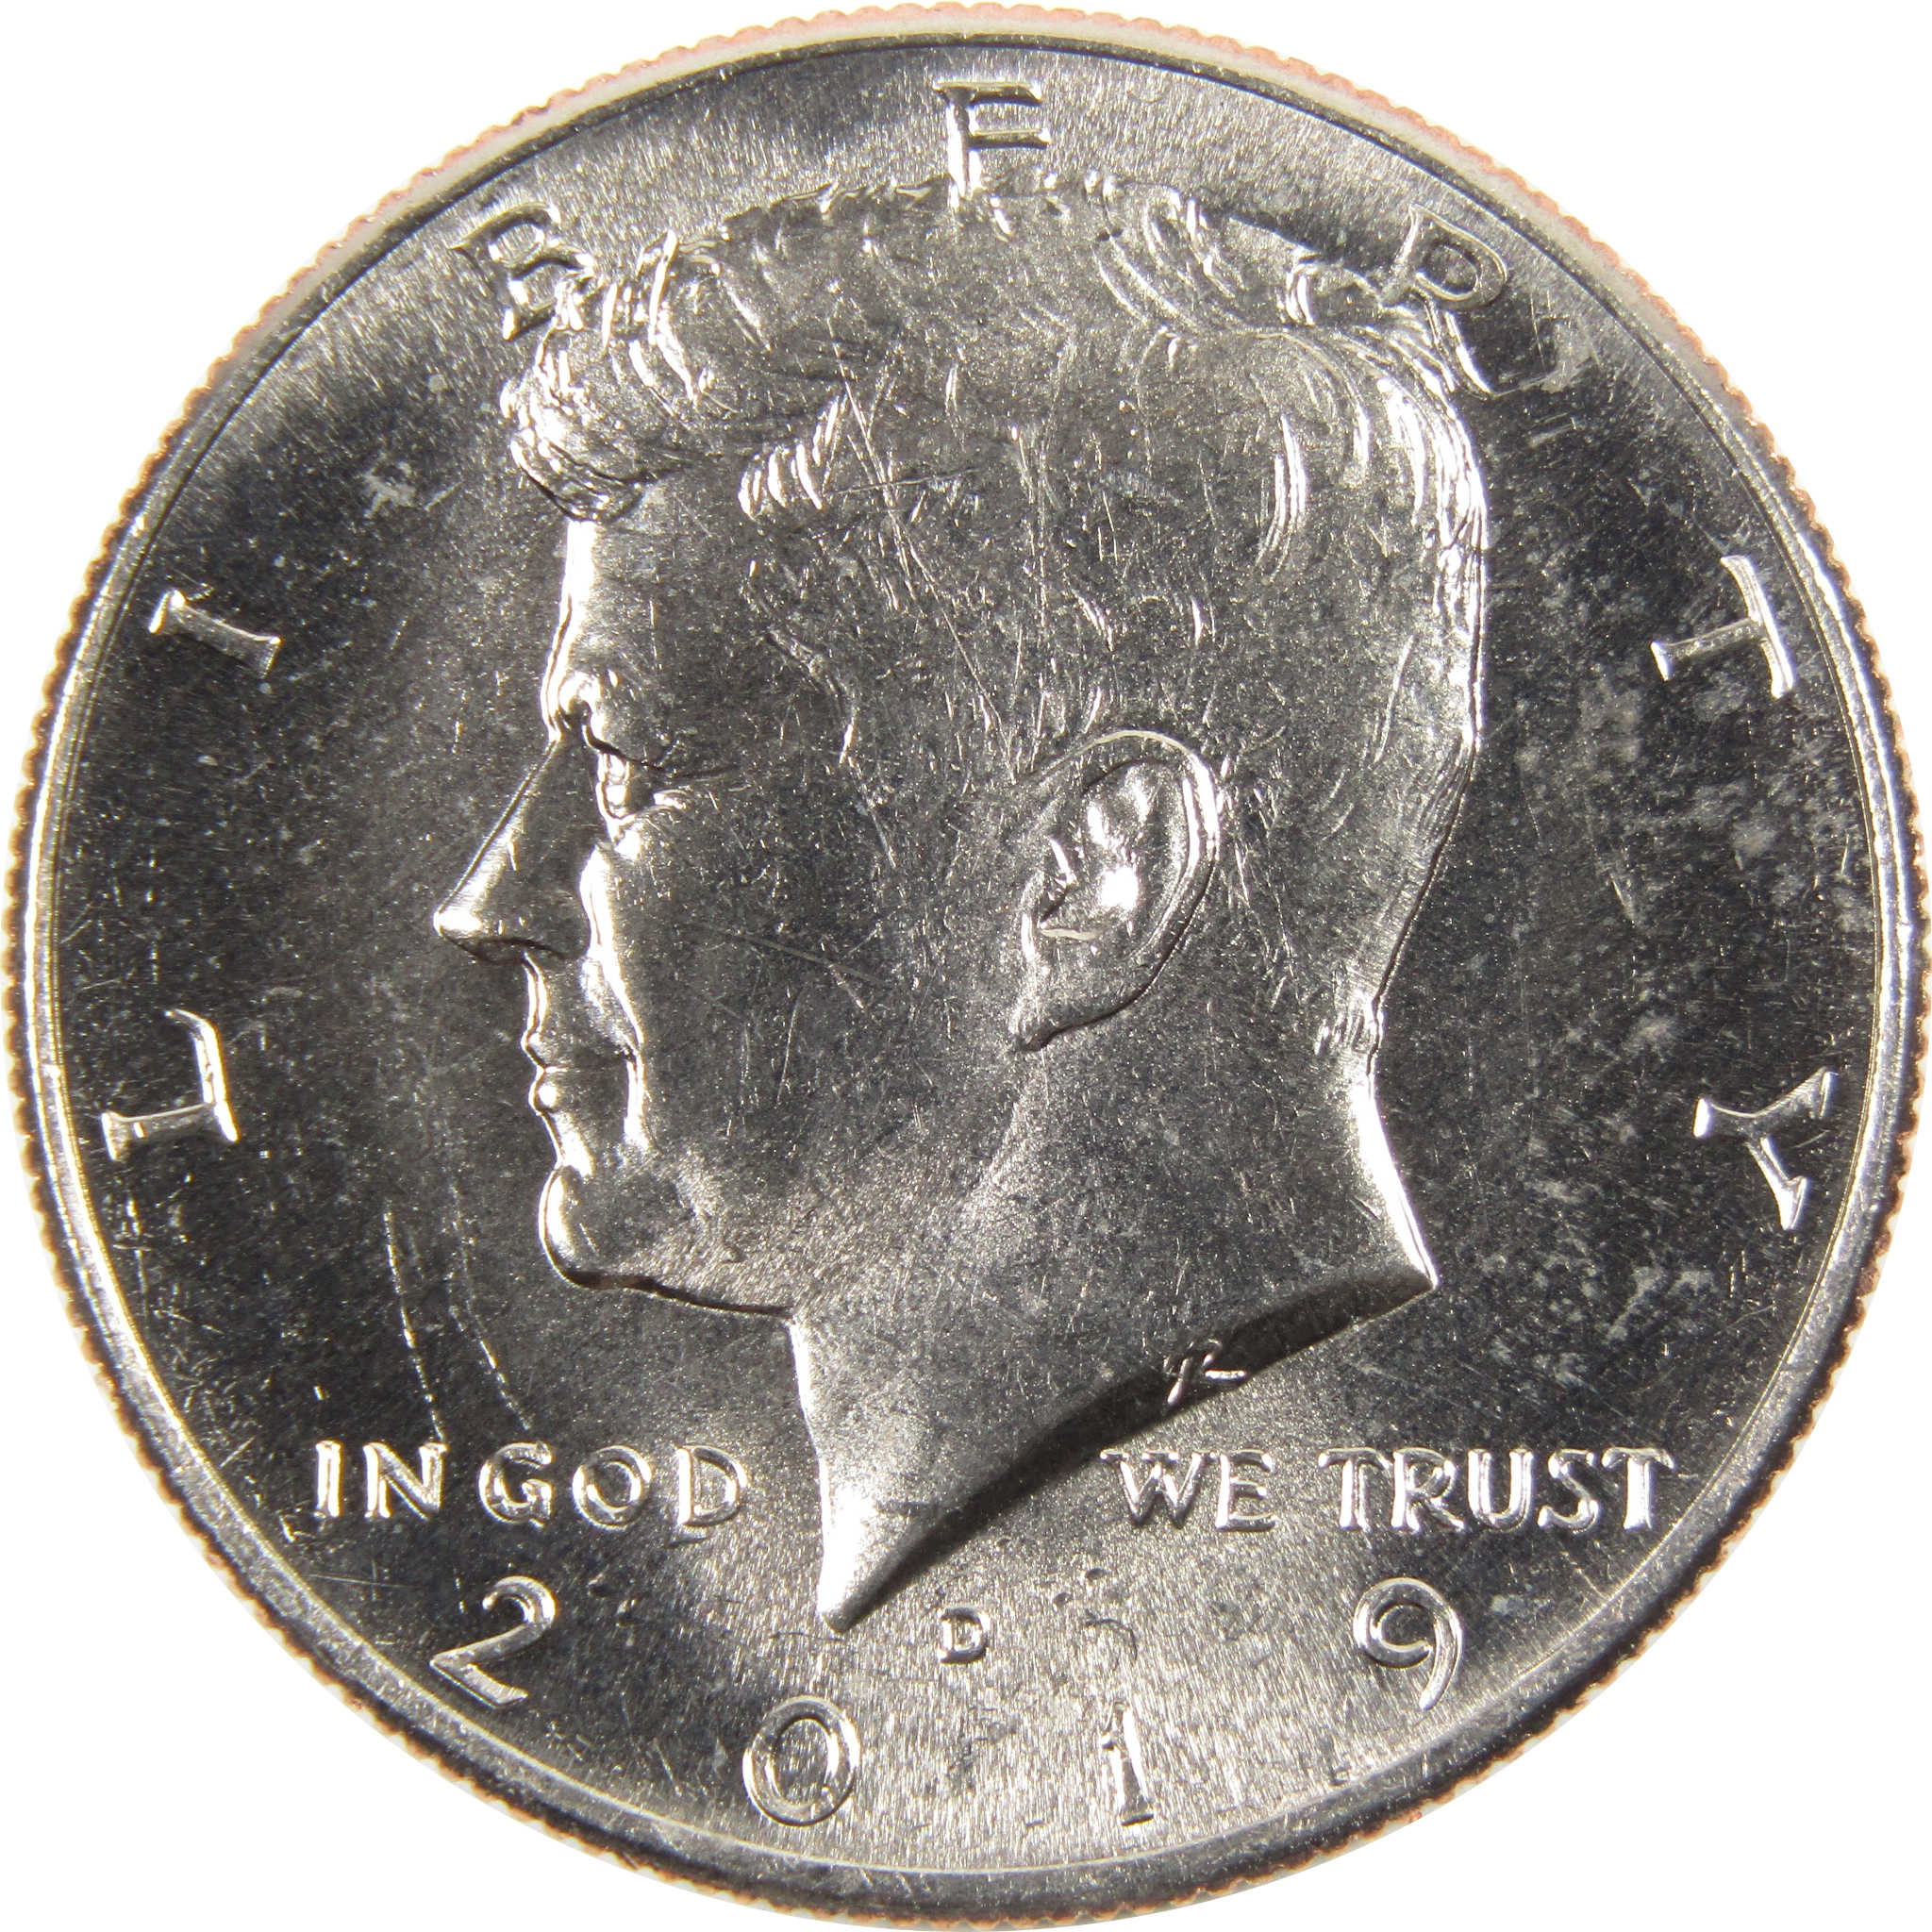 2019 D Kennedy Half Dollar BU Uncirculated Clad 50c Coin